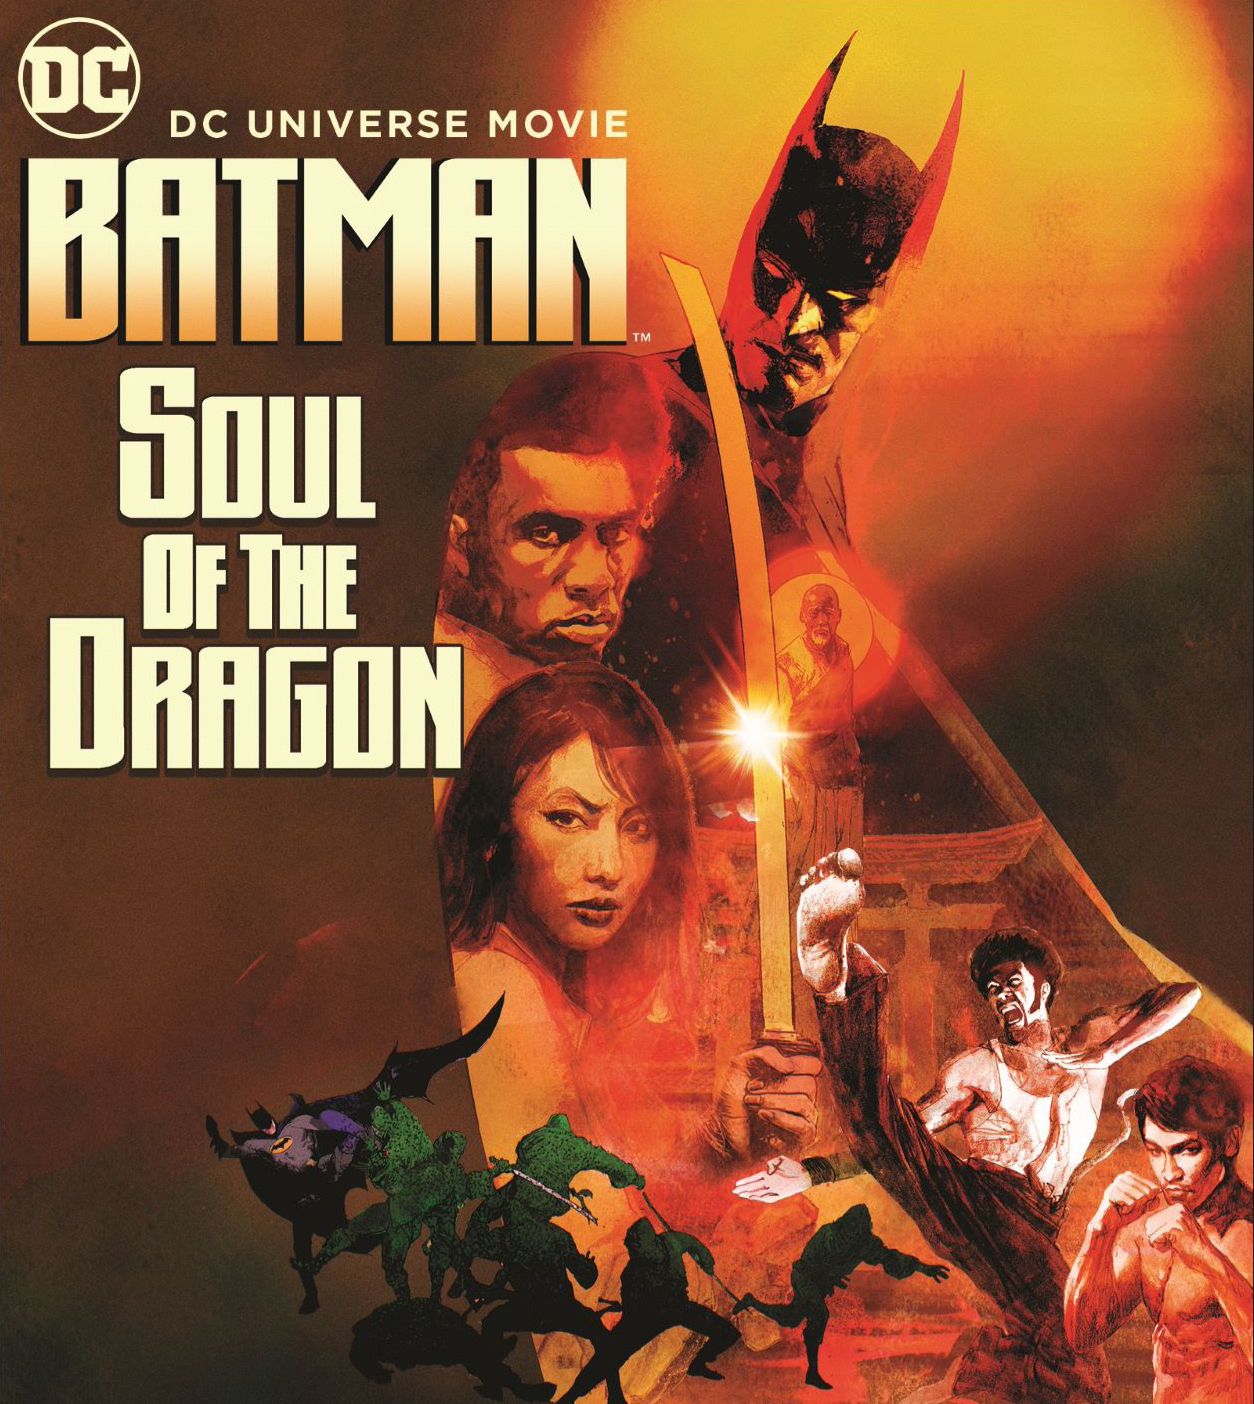 Batman Soul of the Dragon poster